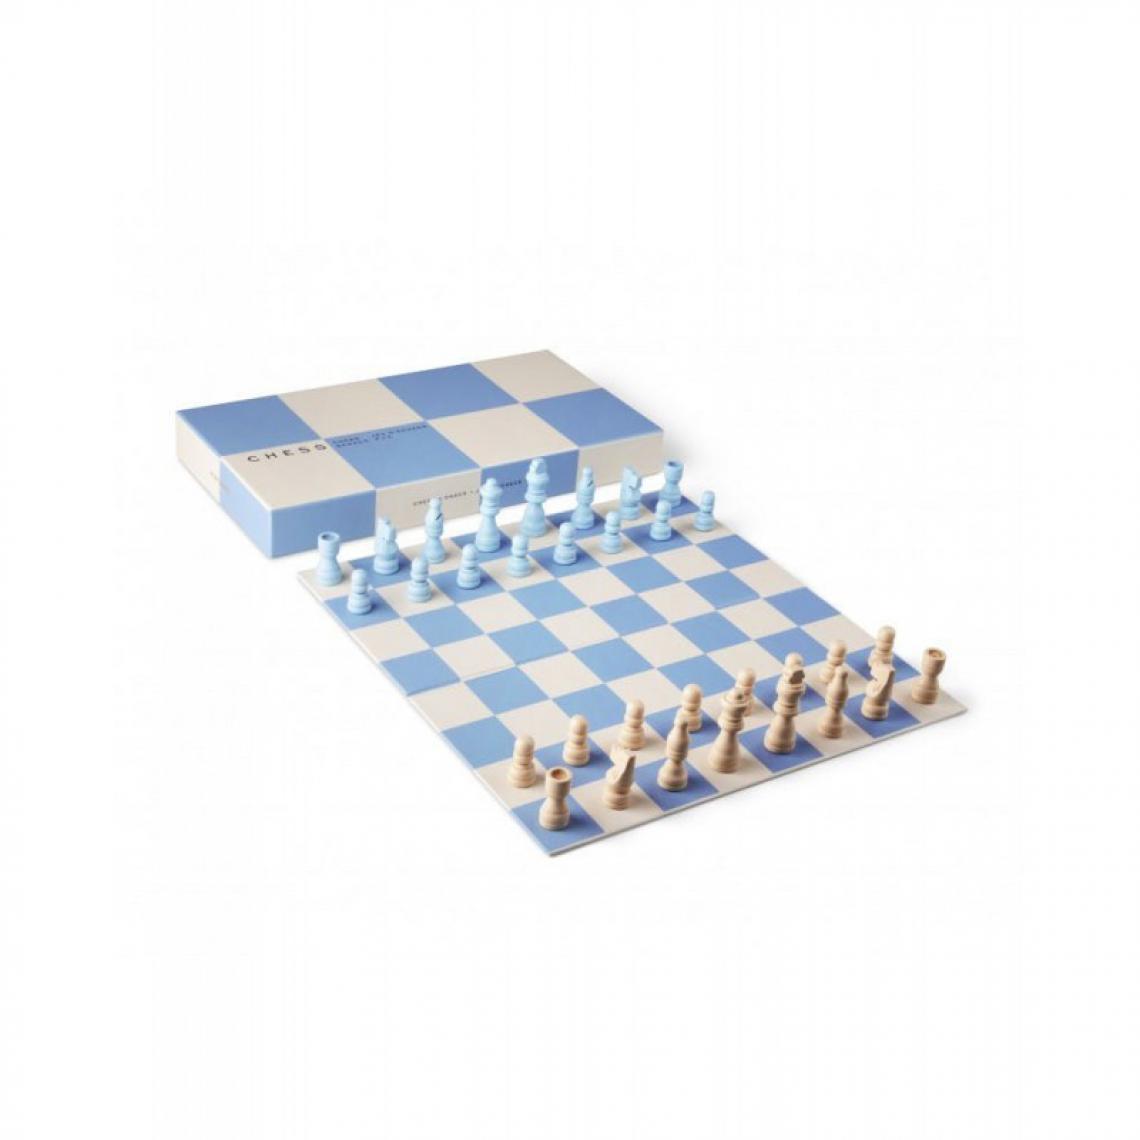 Mpf - Jeu d'échecs - Les grands classiques